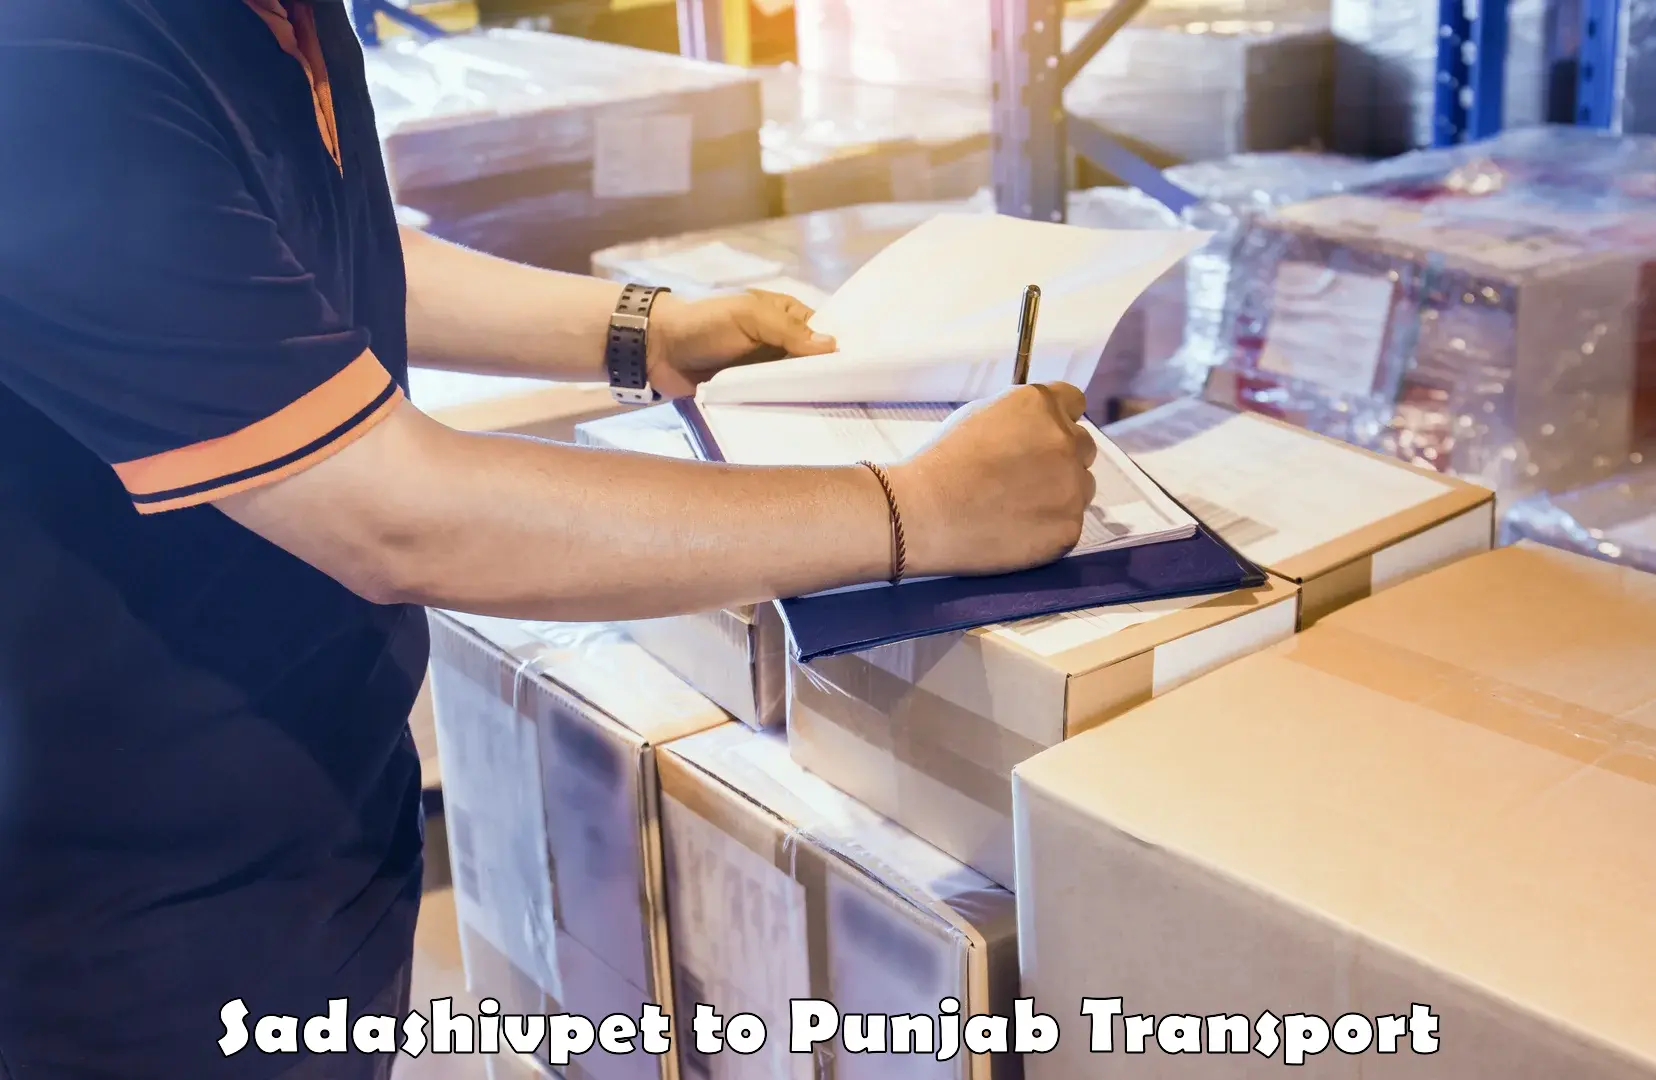 Shipping services Sadashivpet to Jhunir